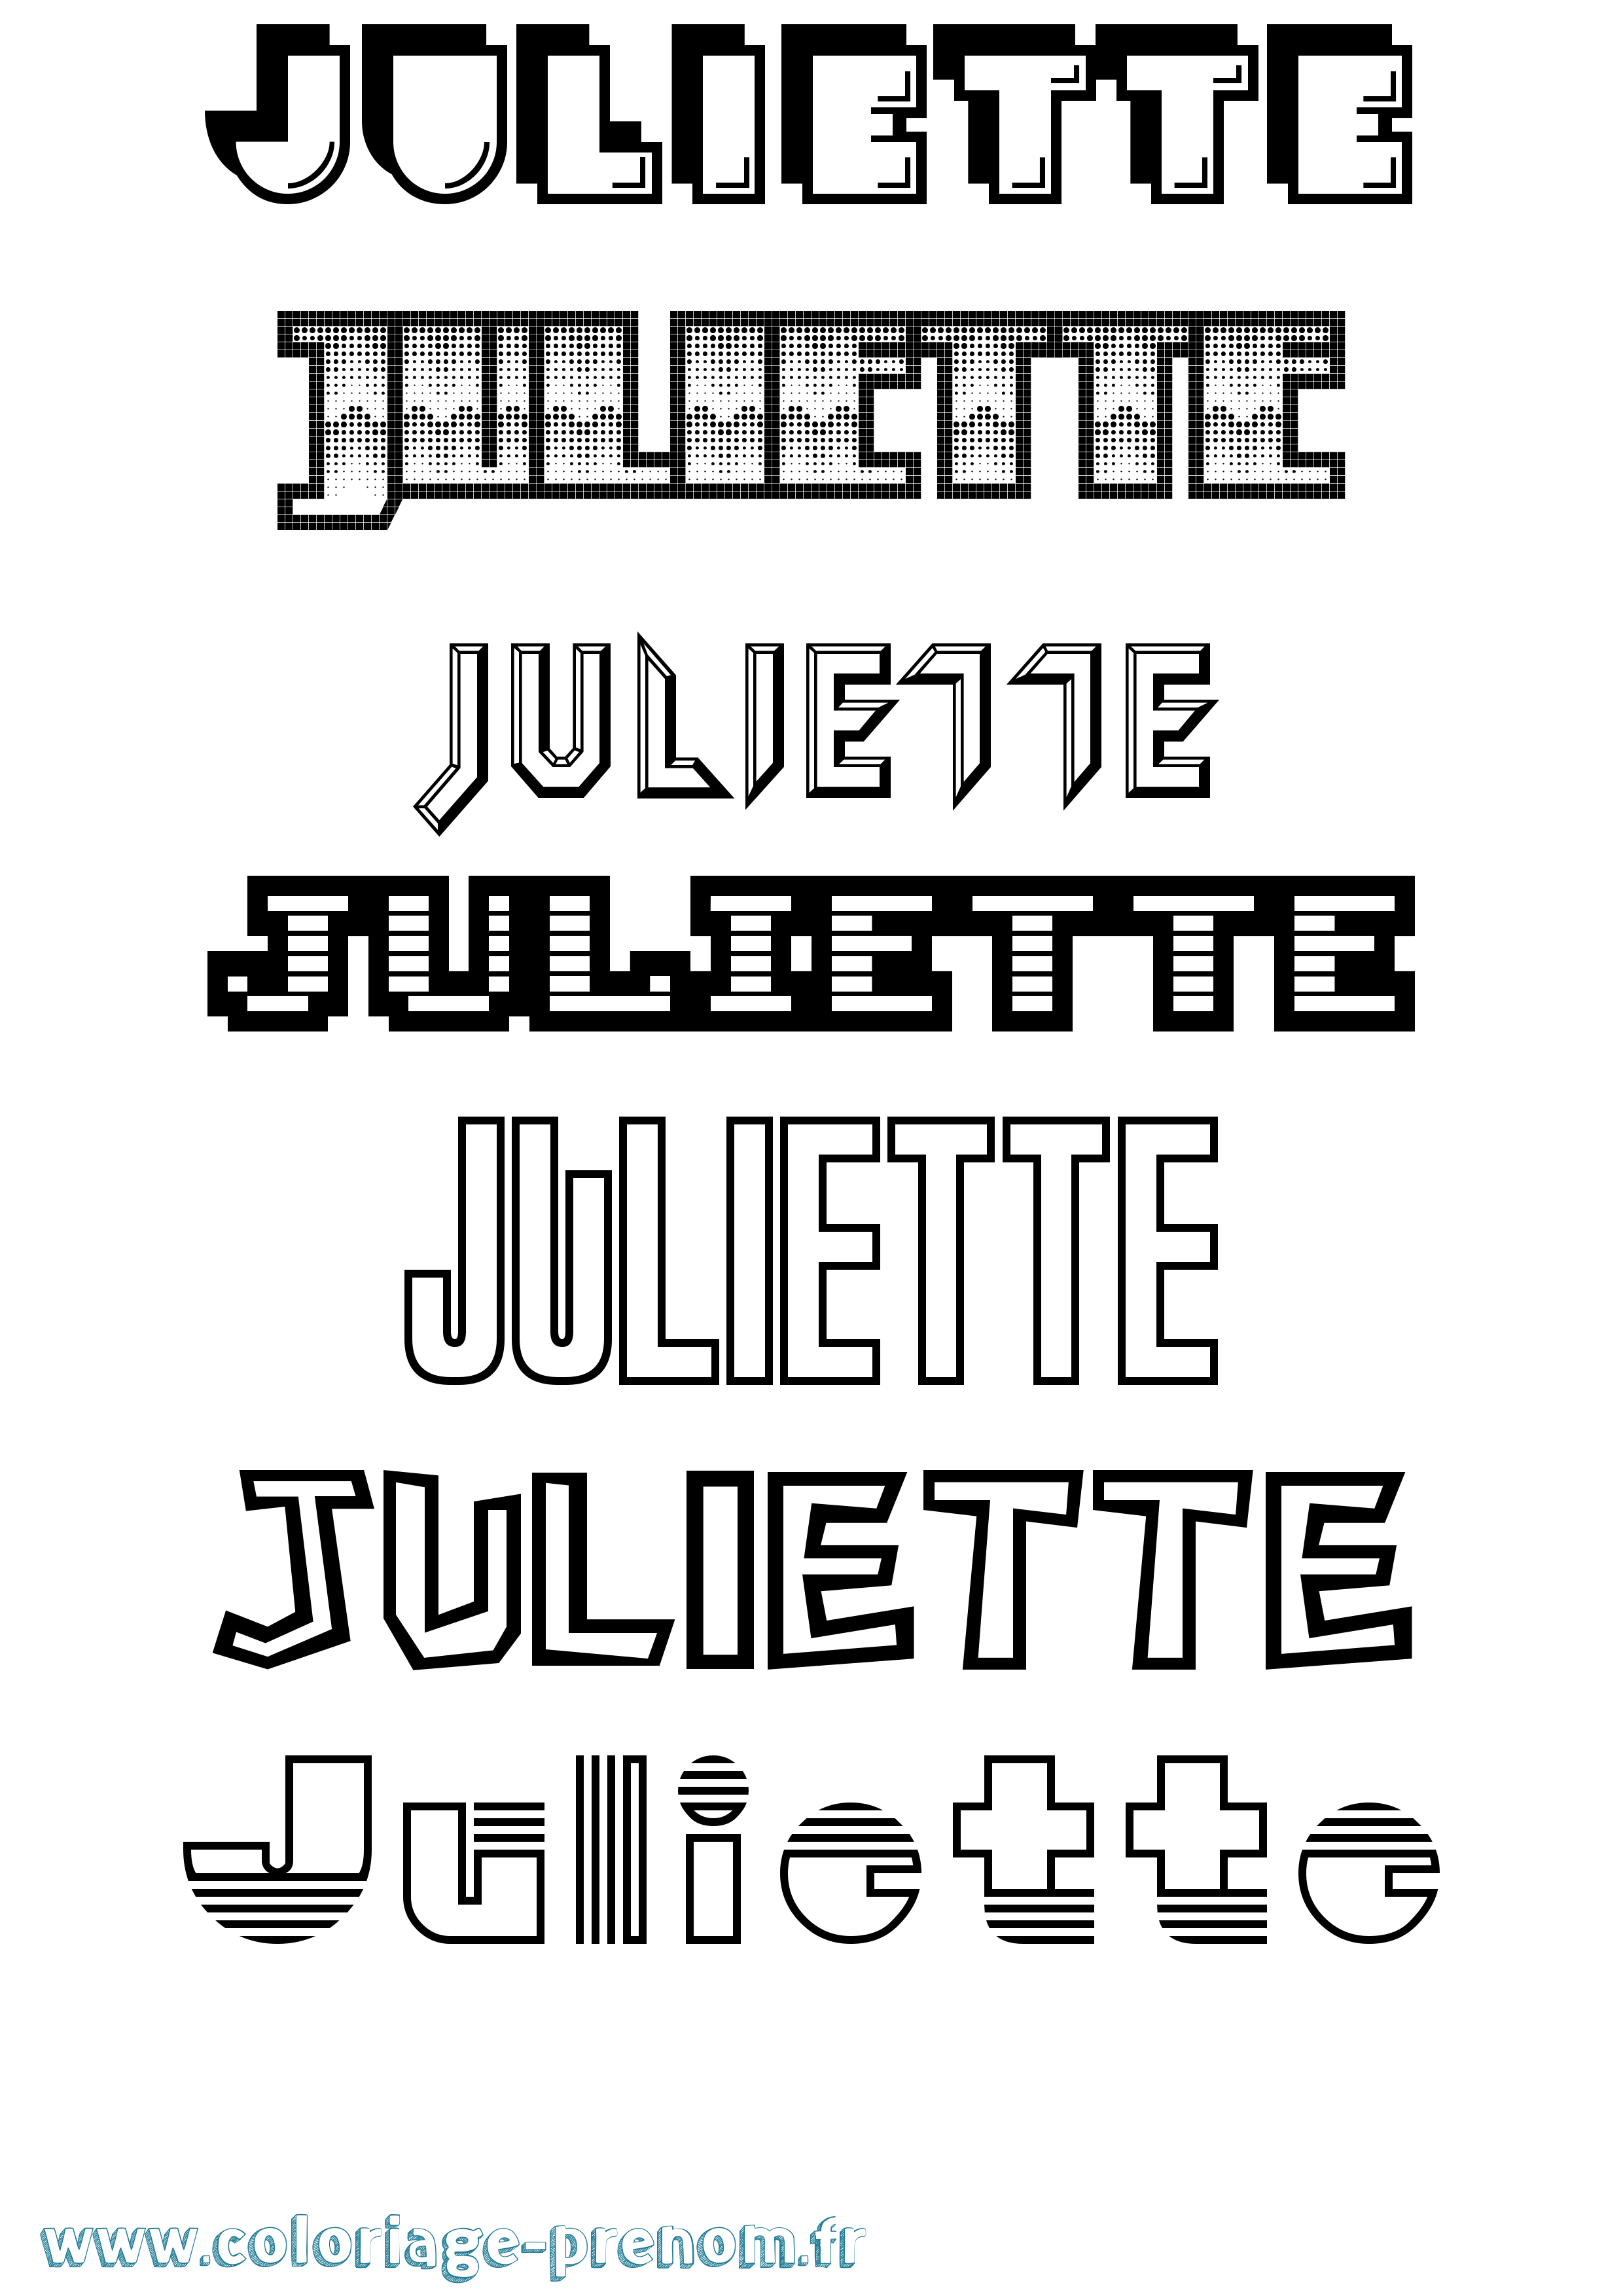 Coloriage prénom Juliette Jeux Vidéos